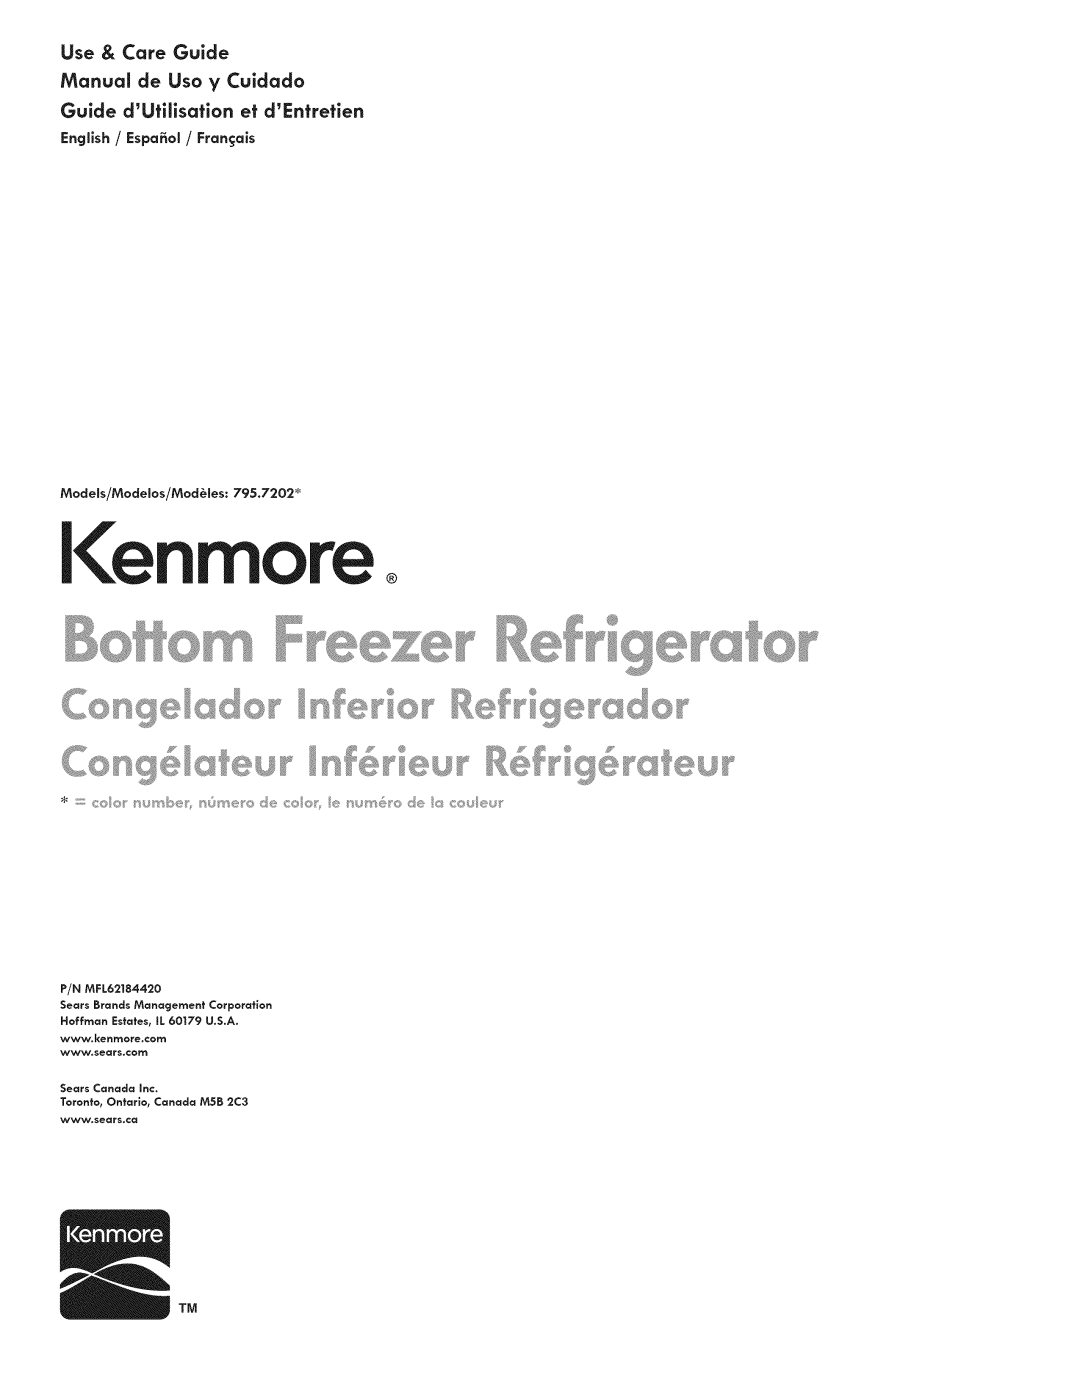 Kenmore 795.7202 manual Kenmore, Use & Care Guide, Manual de Uso y Cuidado, Guide dUtilisation et dEntretien 